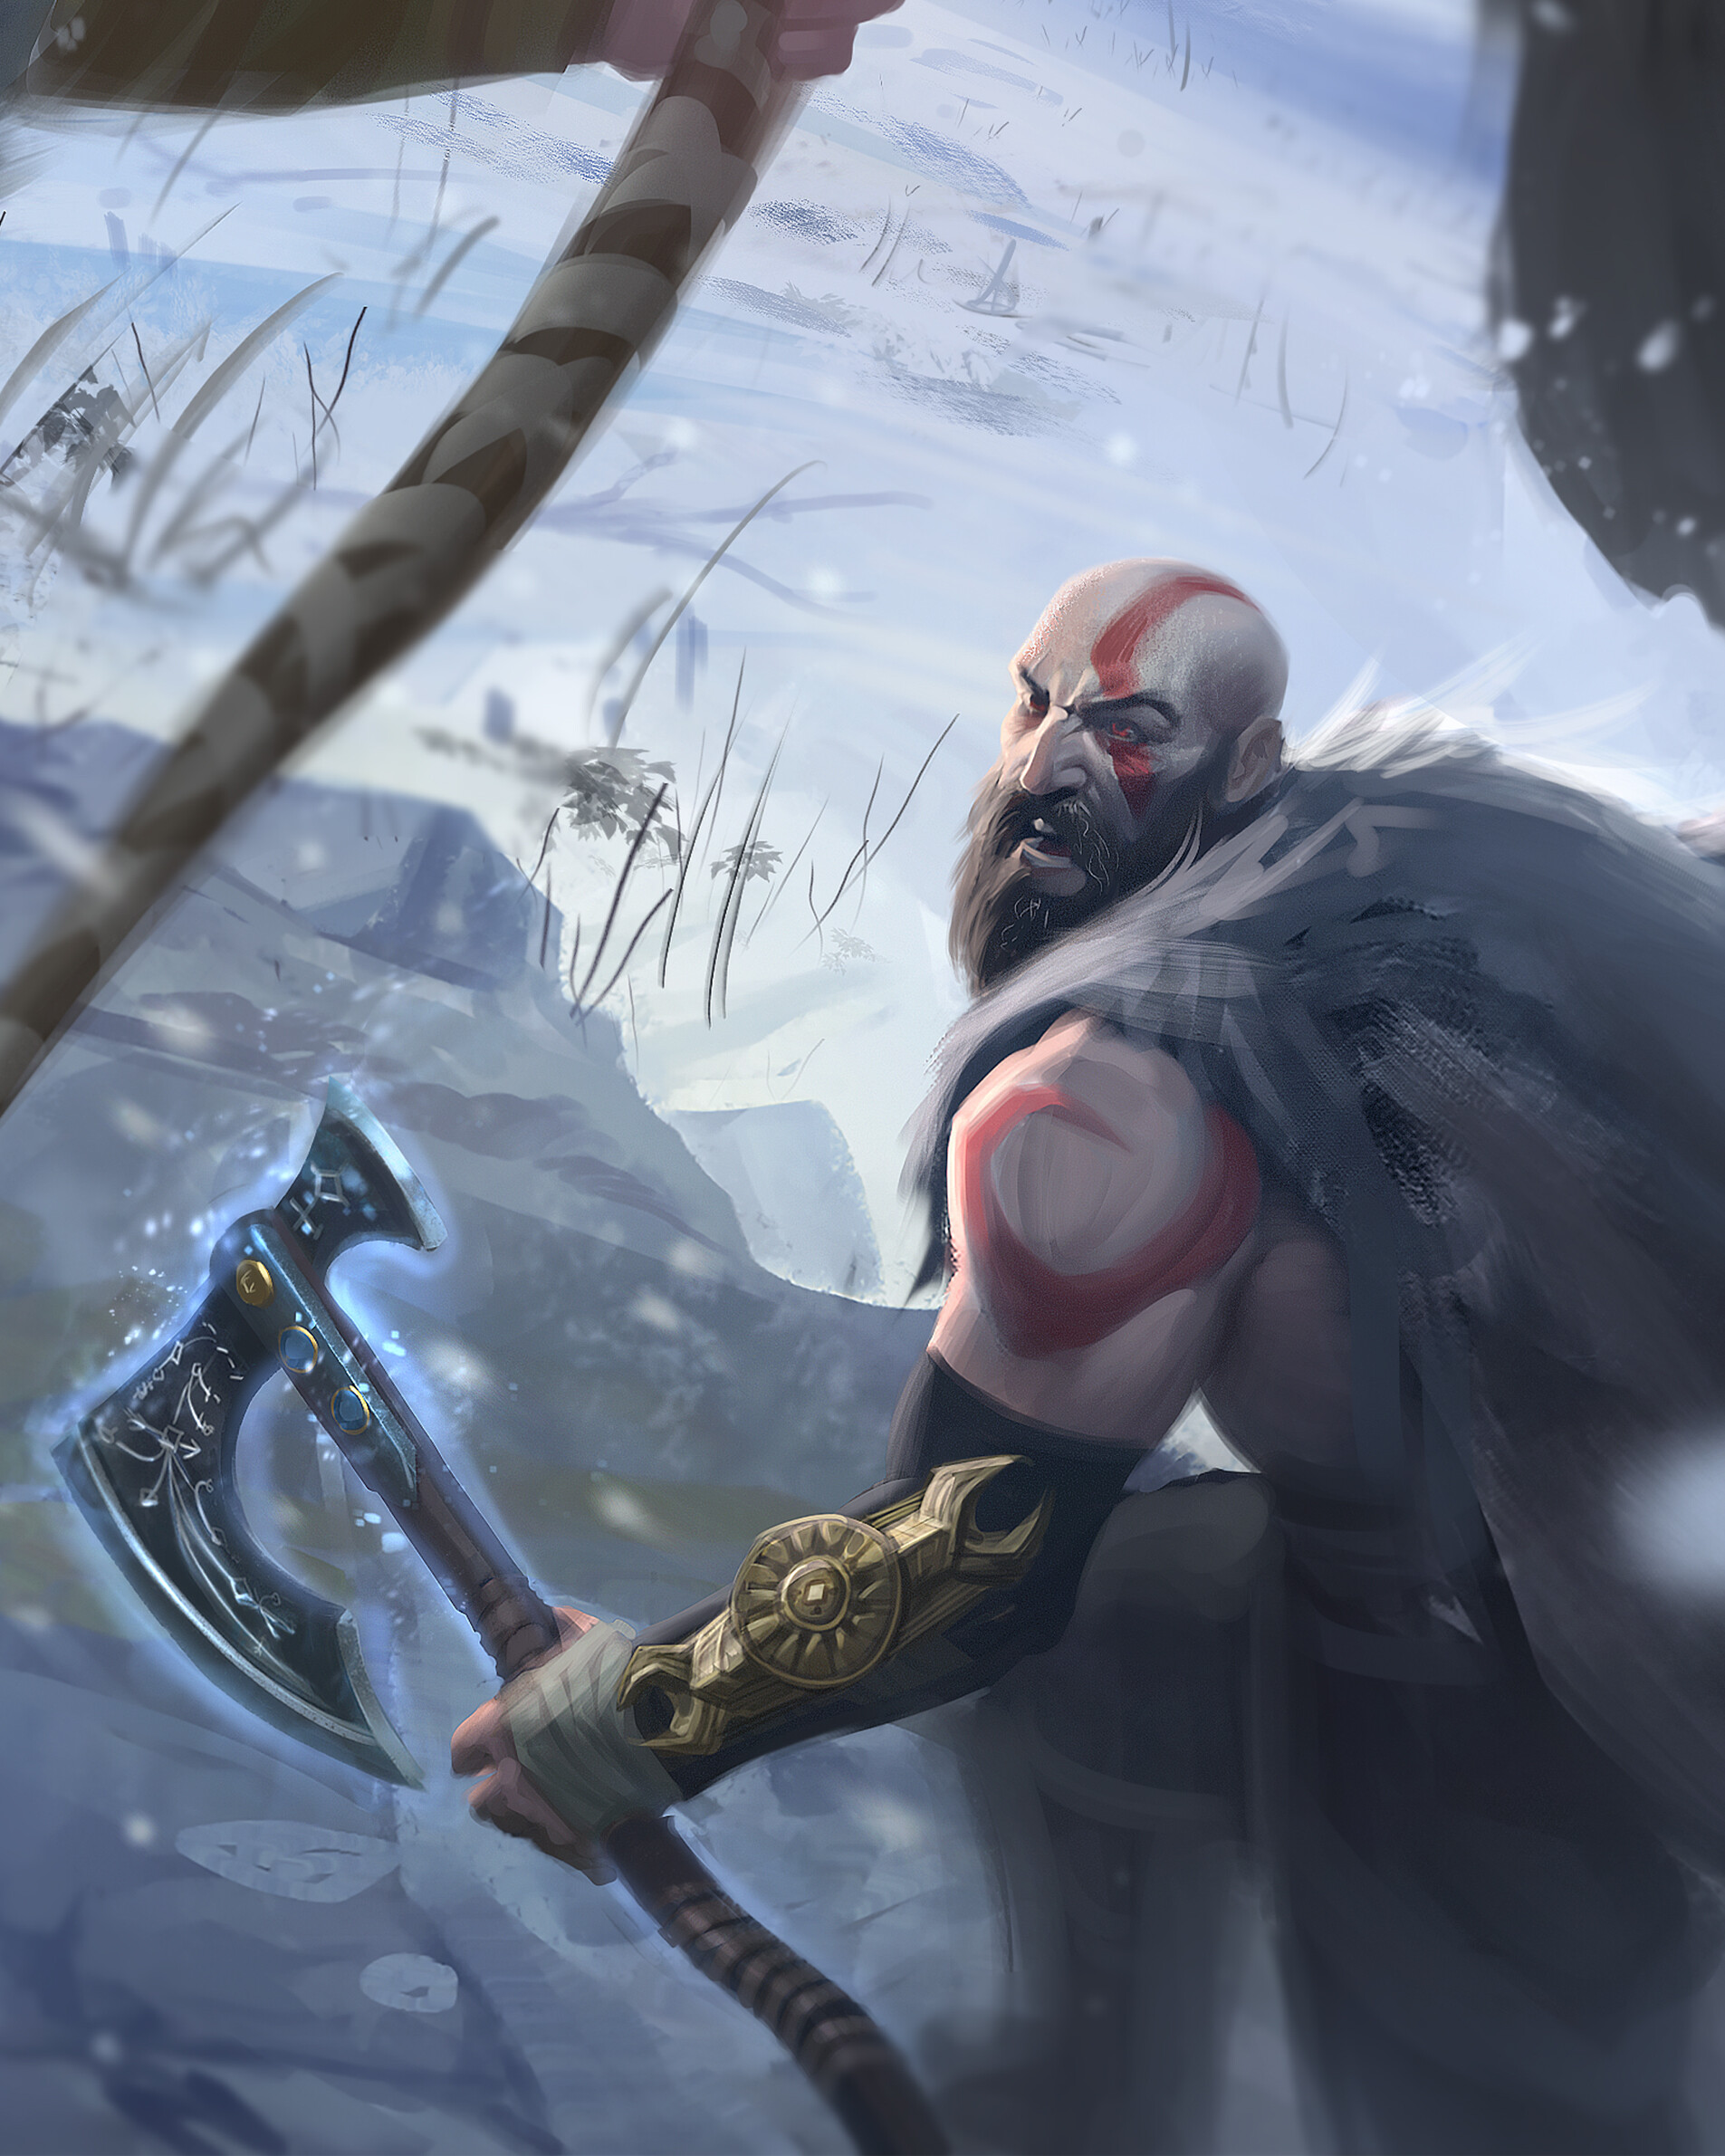 ArtStation - God of war Ragnarok -thor- fan art